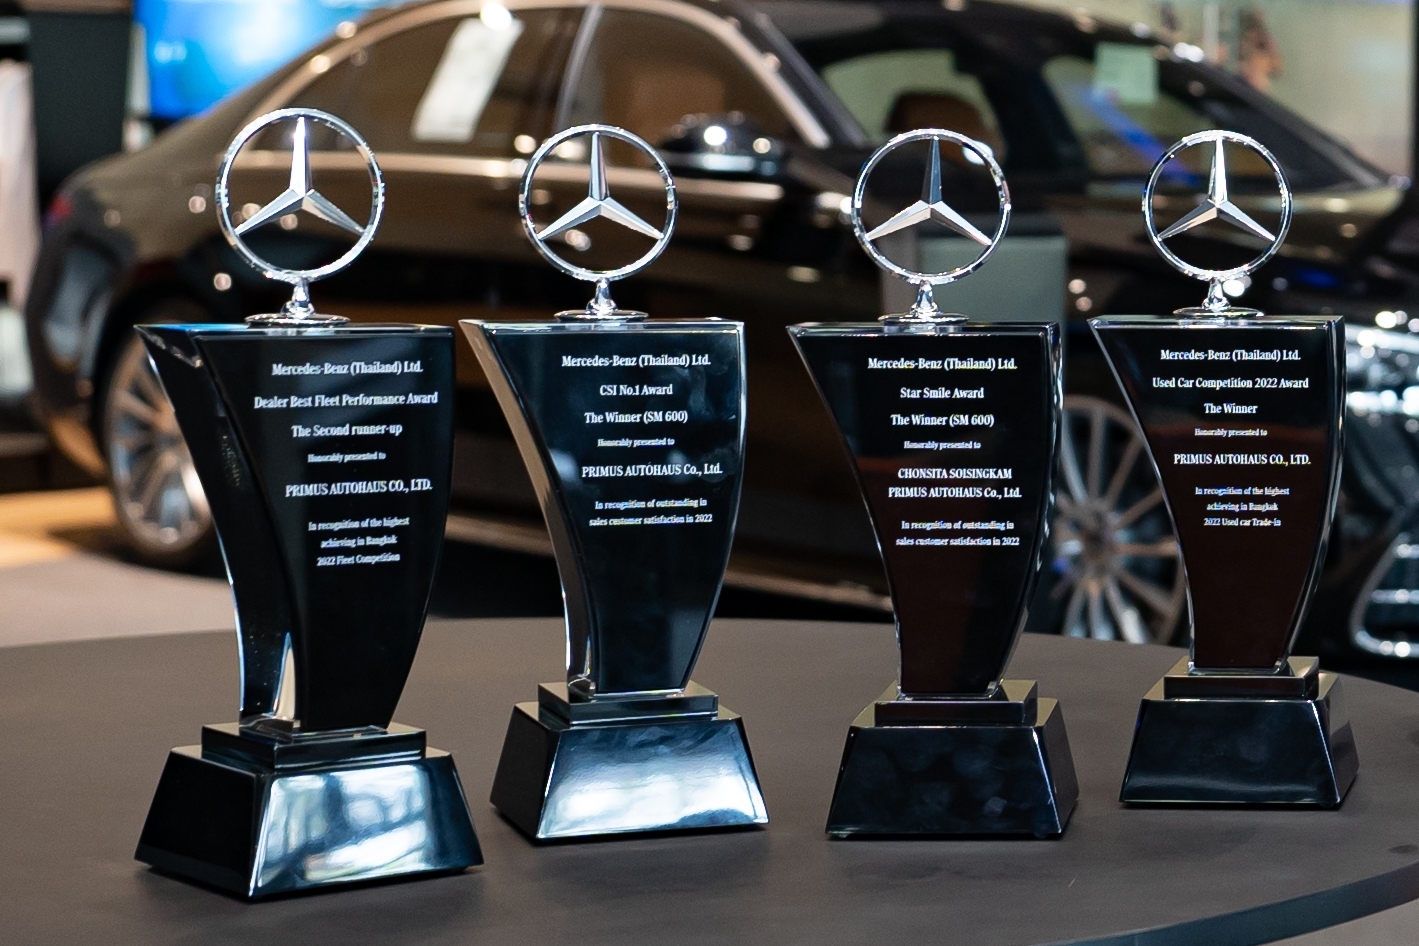 “เบนซ์ไพรม์มัส” สุดปัง! คว้า 4 รางวัล CSI นั่งแท่นขวัญใจลูกค้า Mercedes-Benz